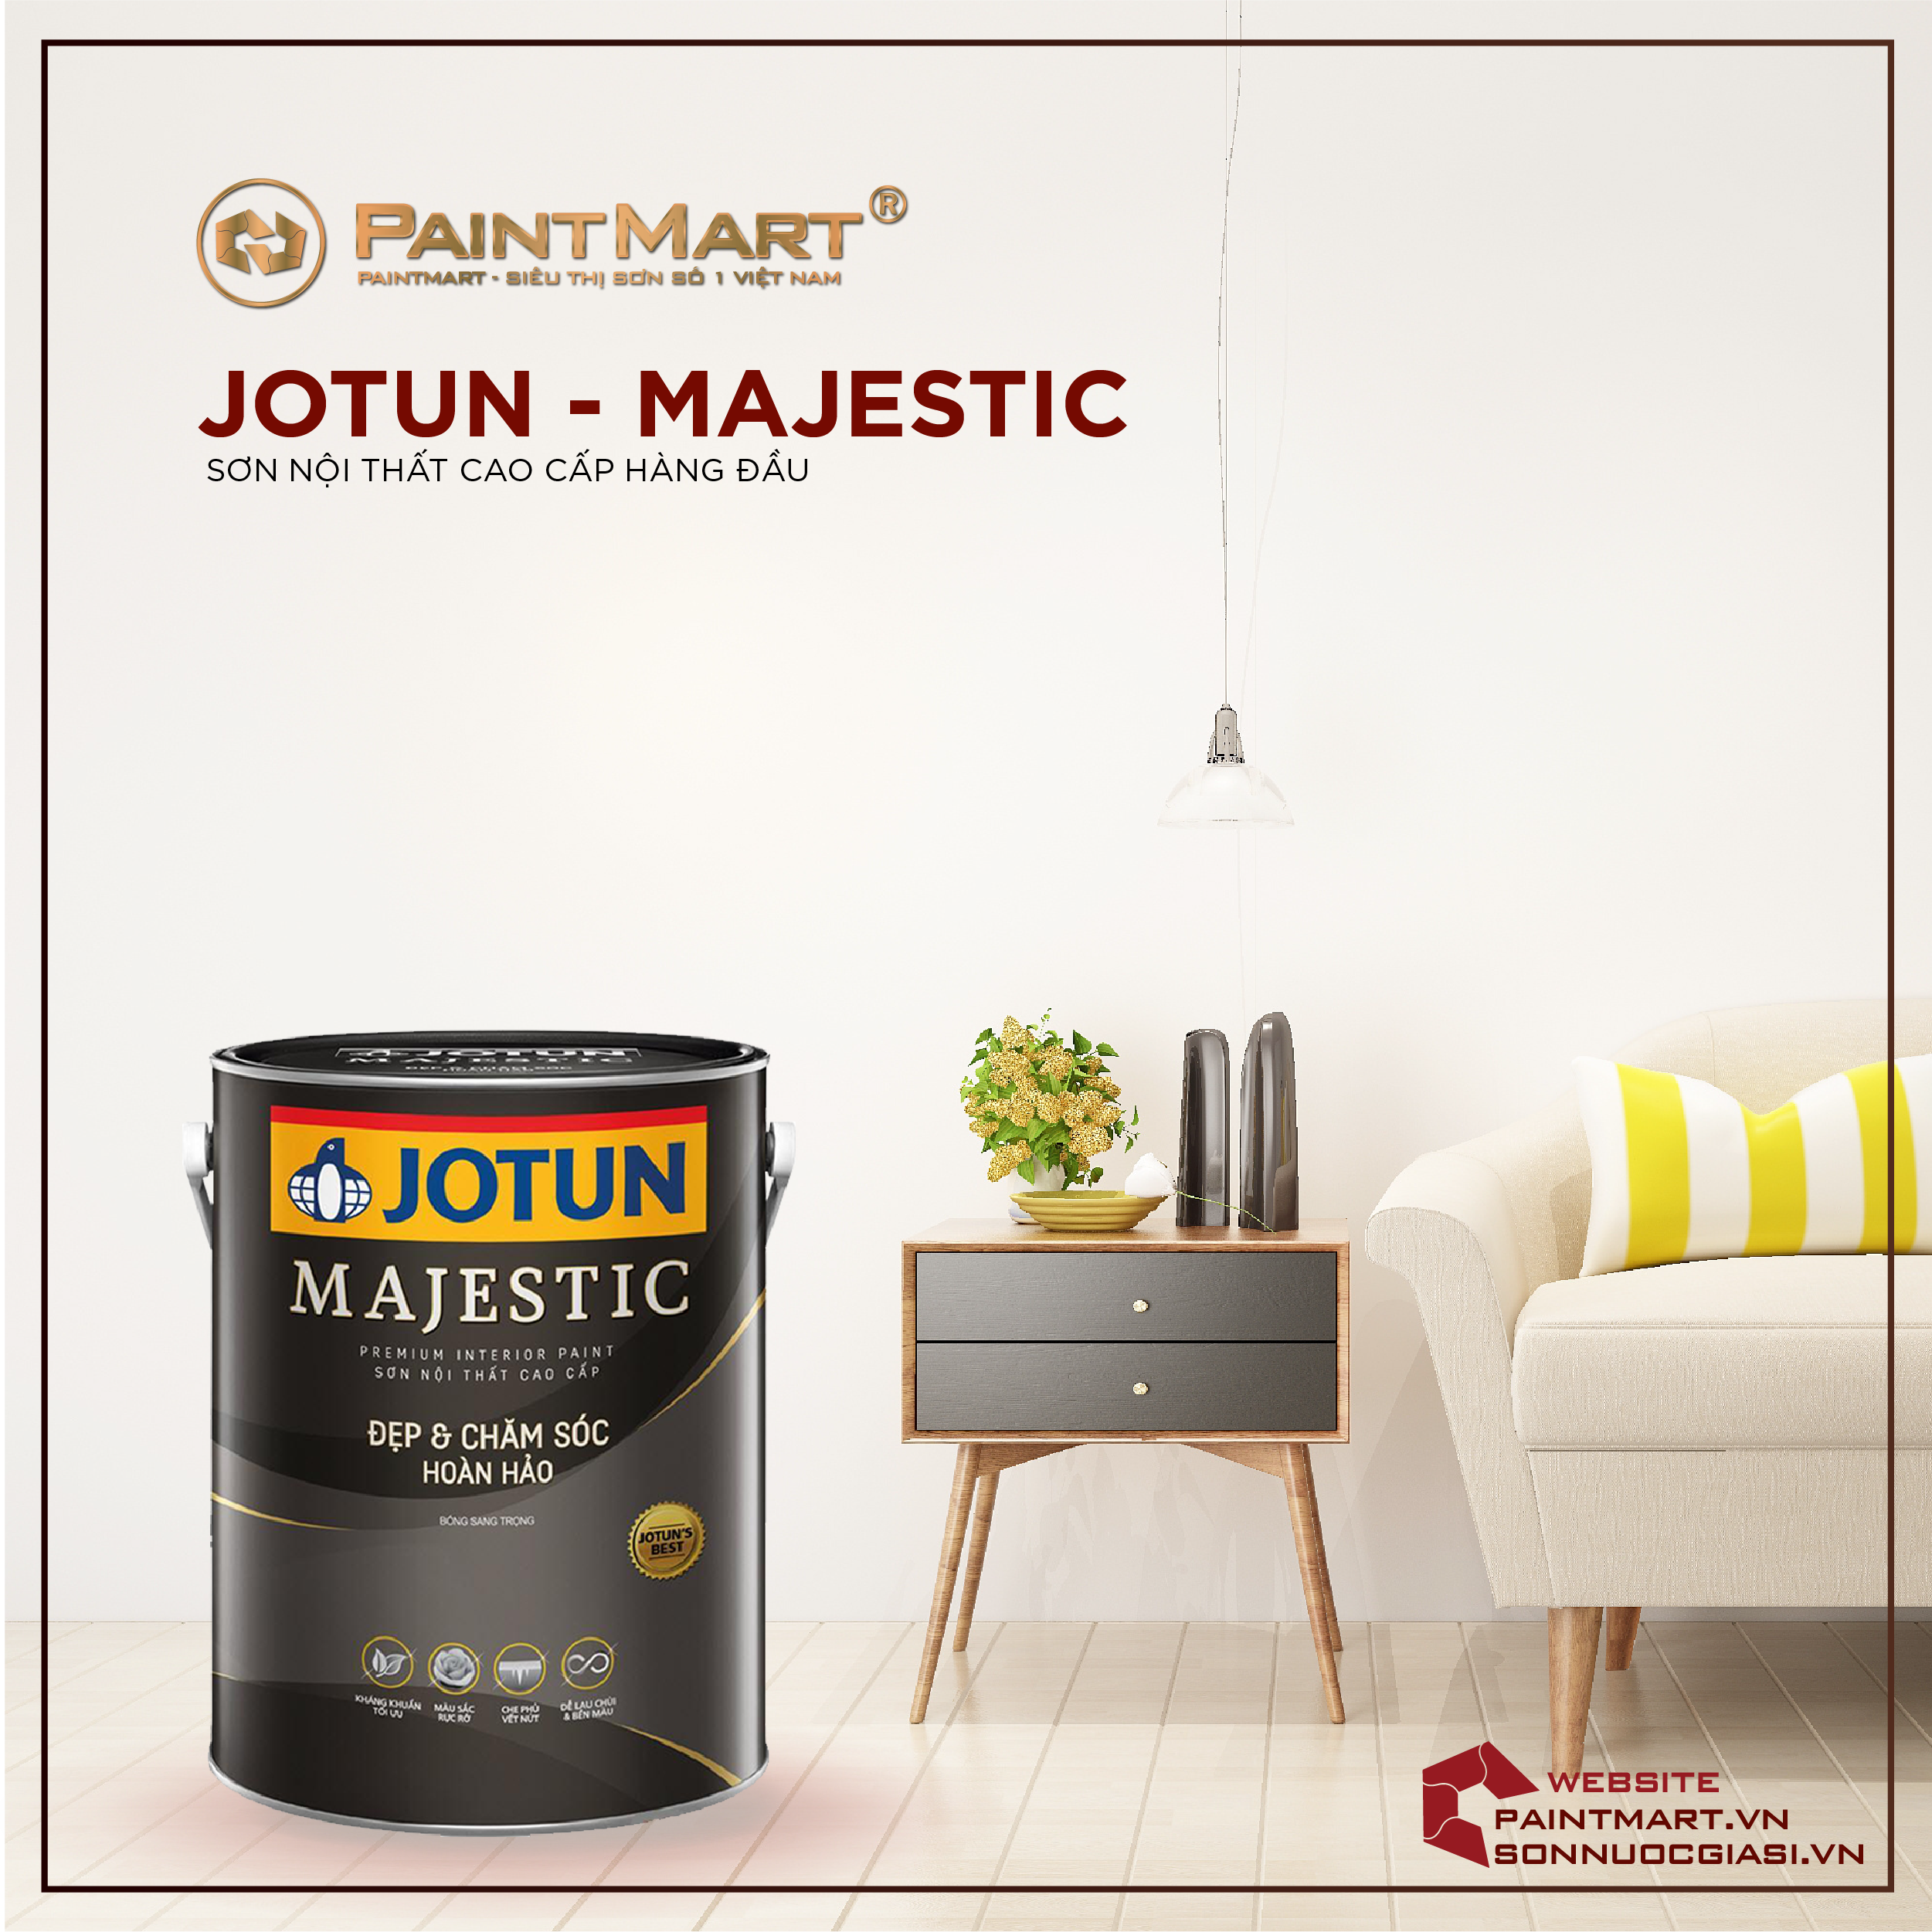 Sơn nội thất Jotun Majestic mang lại vẻ đẹp hoàn hảo cho không gian sống của bạn với độ phủ hoàn hảo và chất lượng tốt nhất.